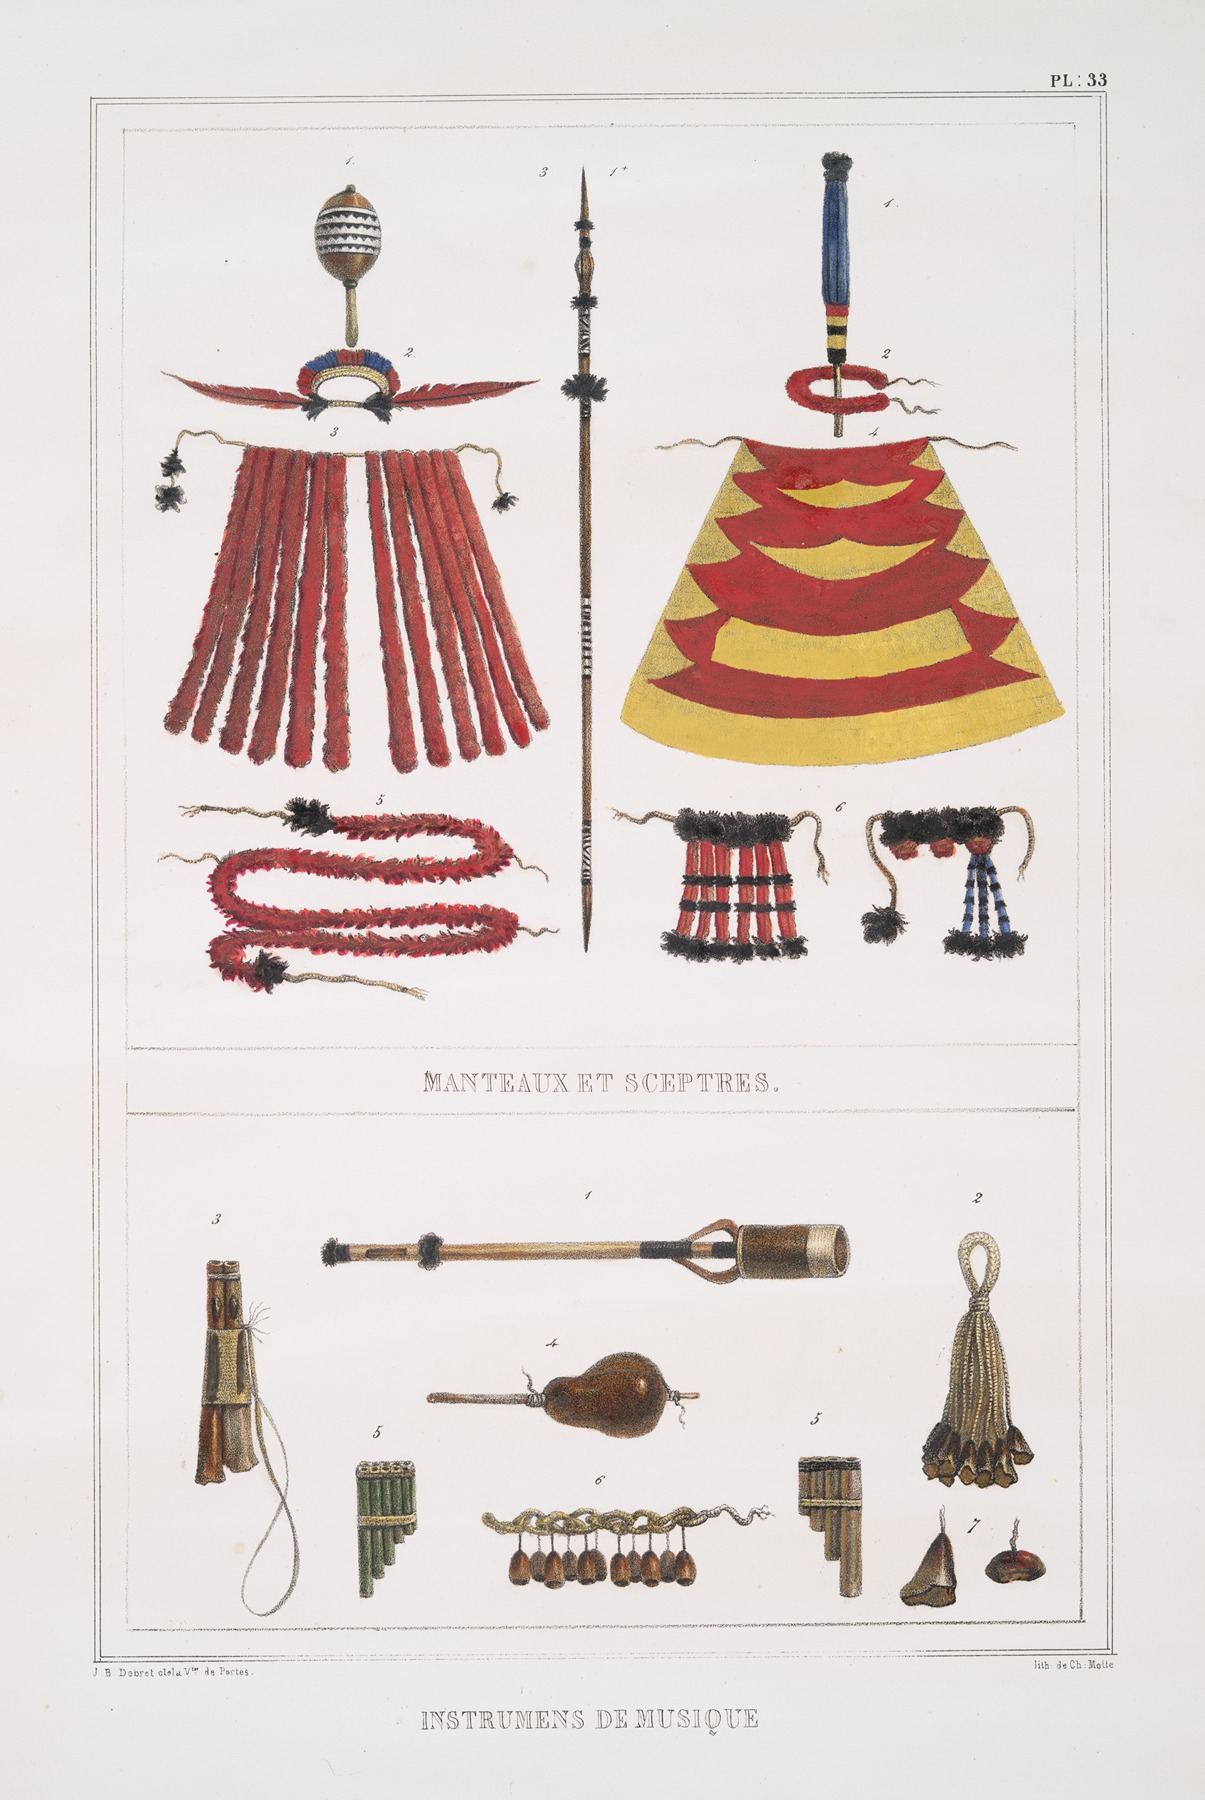 Jean Baptiste Debret - Manteaux et sceptres; Instruments de musique